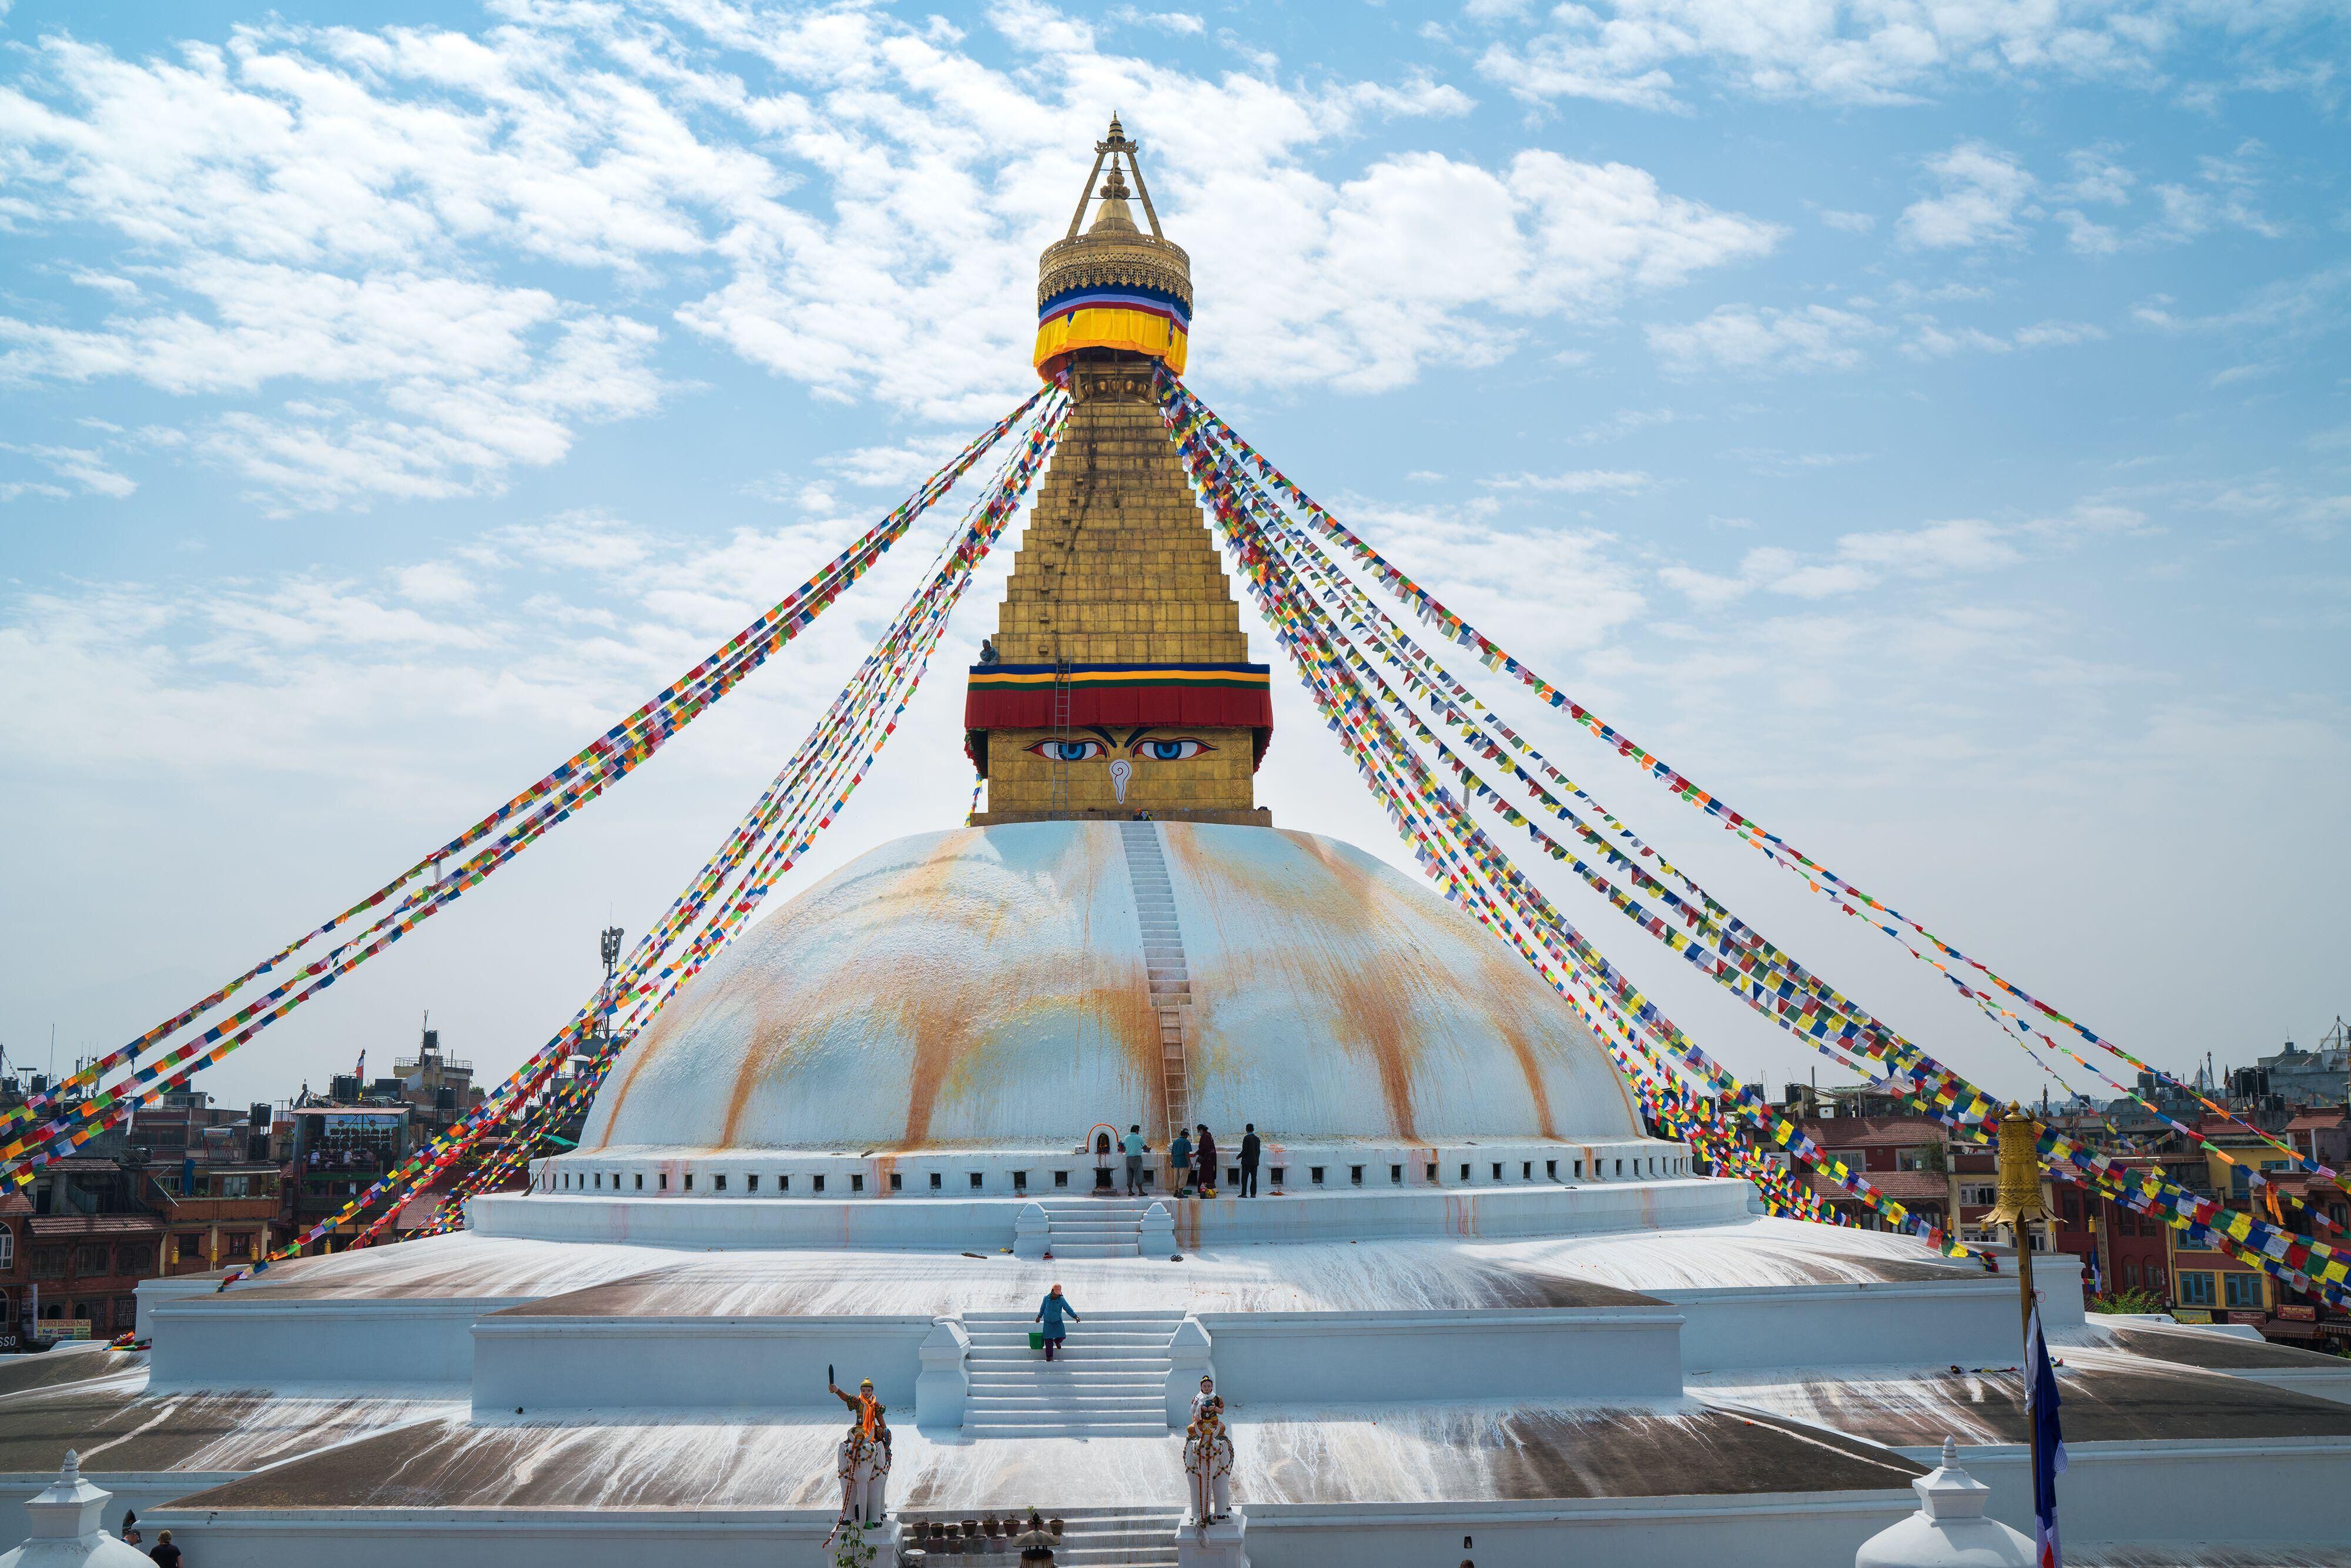 La estupa de Bodhnath, una de las más grandes de Nepal.